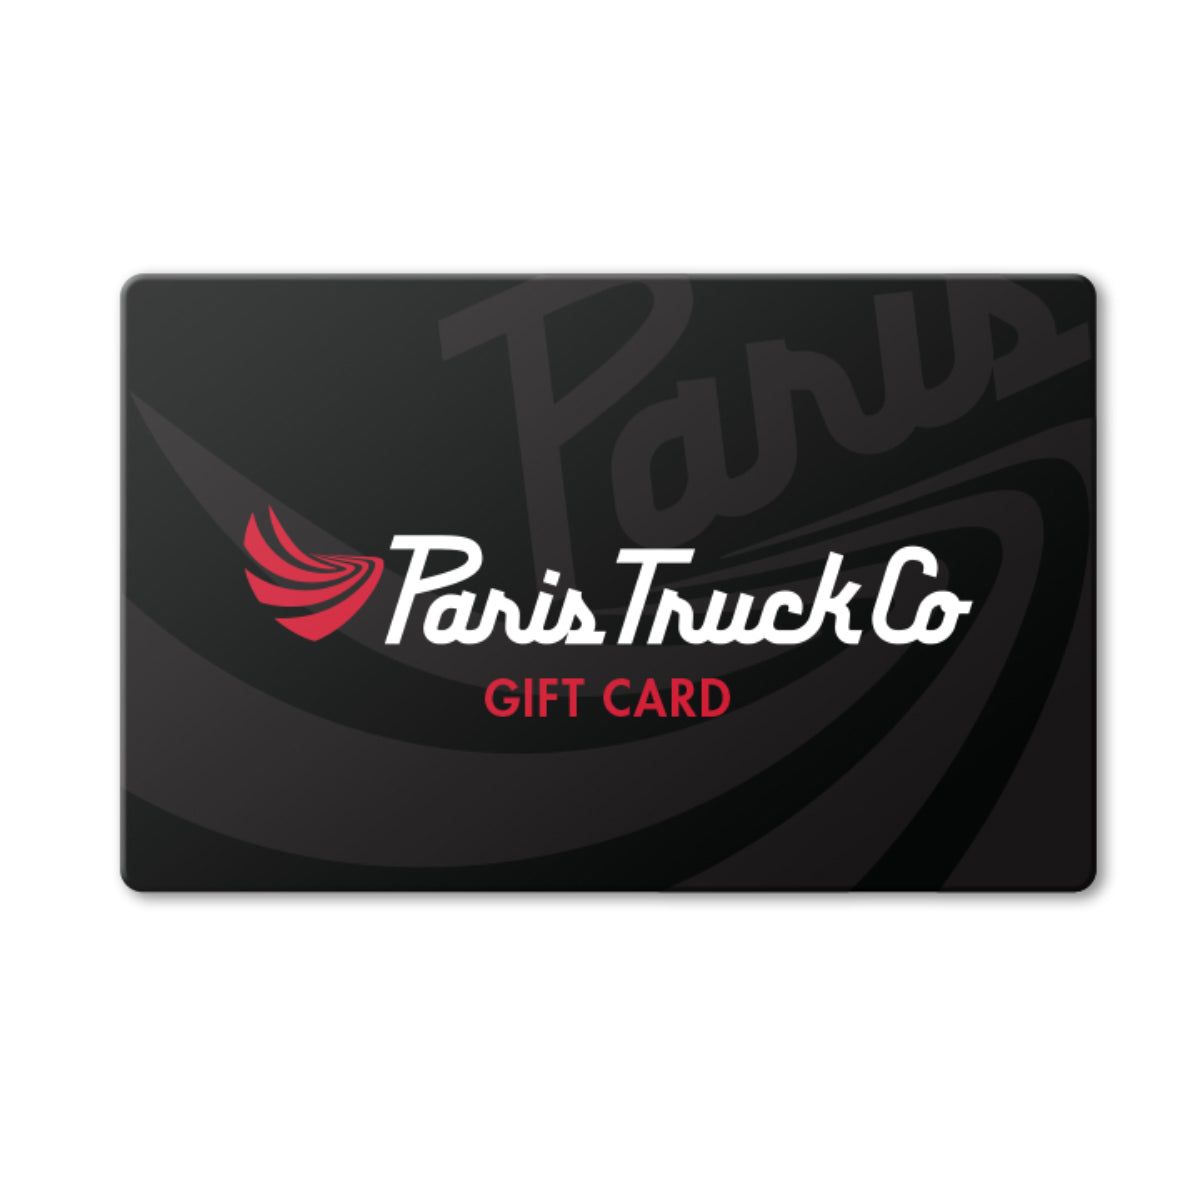 Paris Trucks - Gift Card